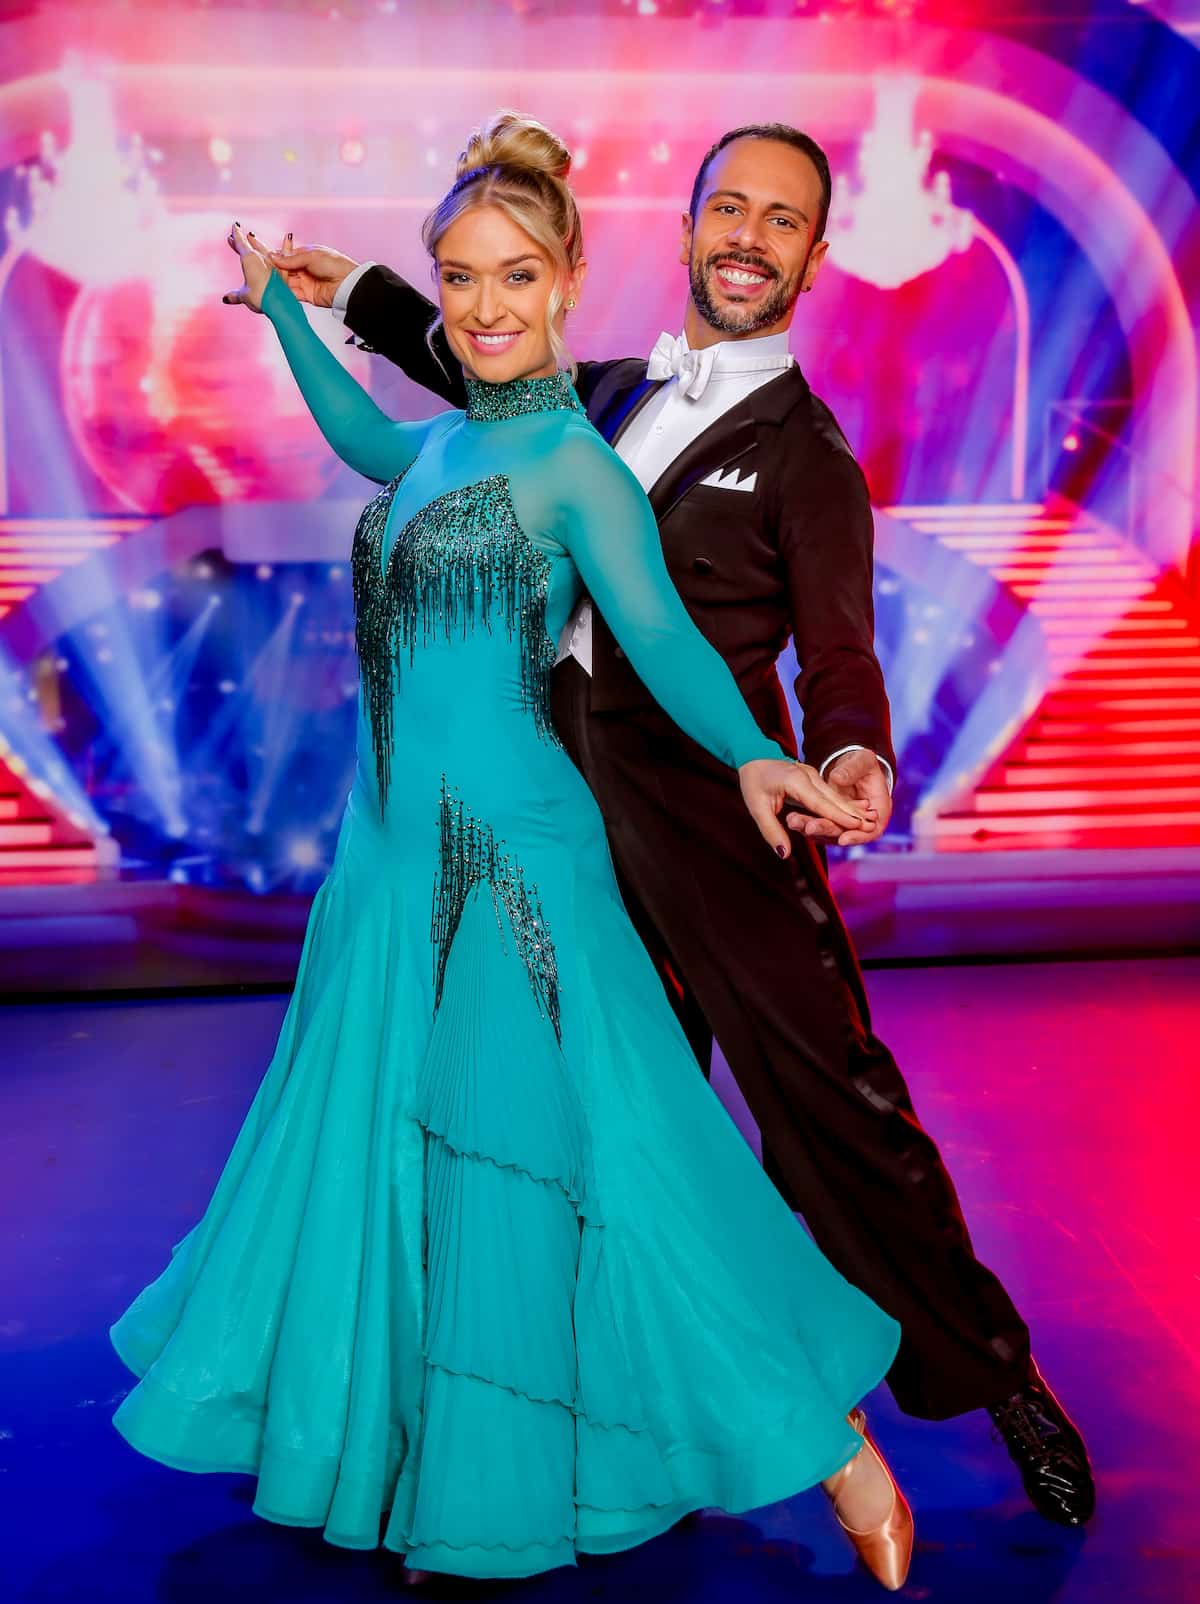 Corinna Kamper und Danilo Campisi im Kostüm für den Wiener Walzer bei den Dancing Stars am 10.3.2023